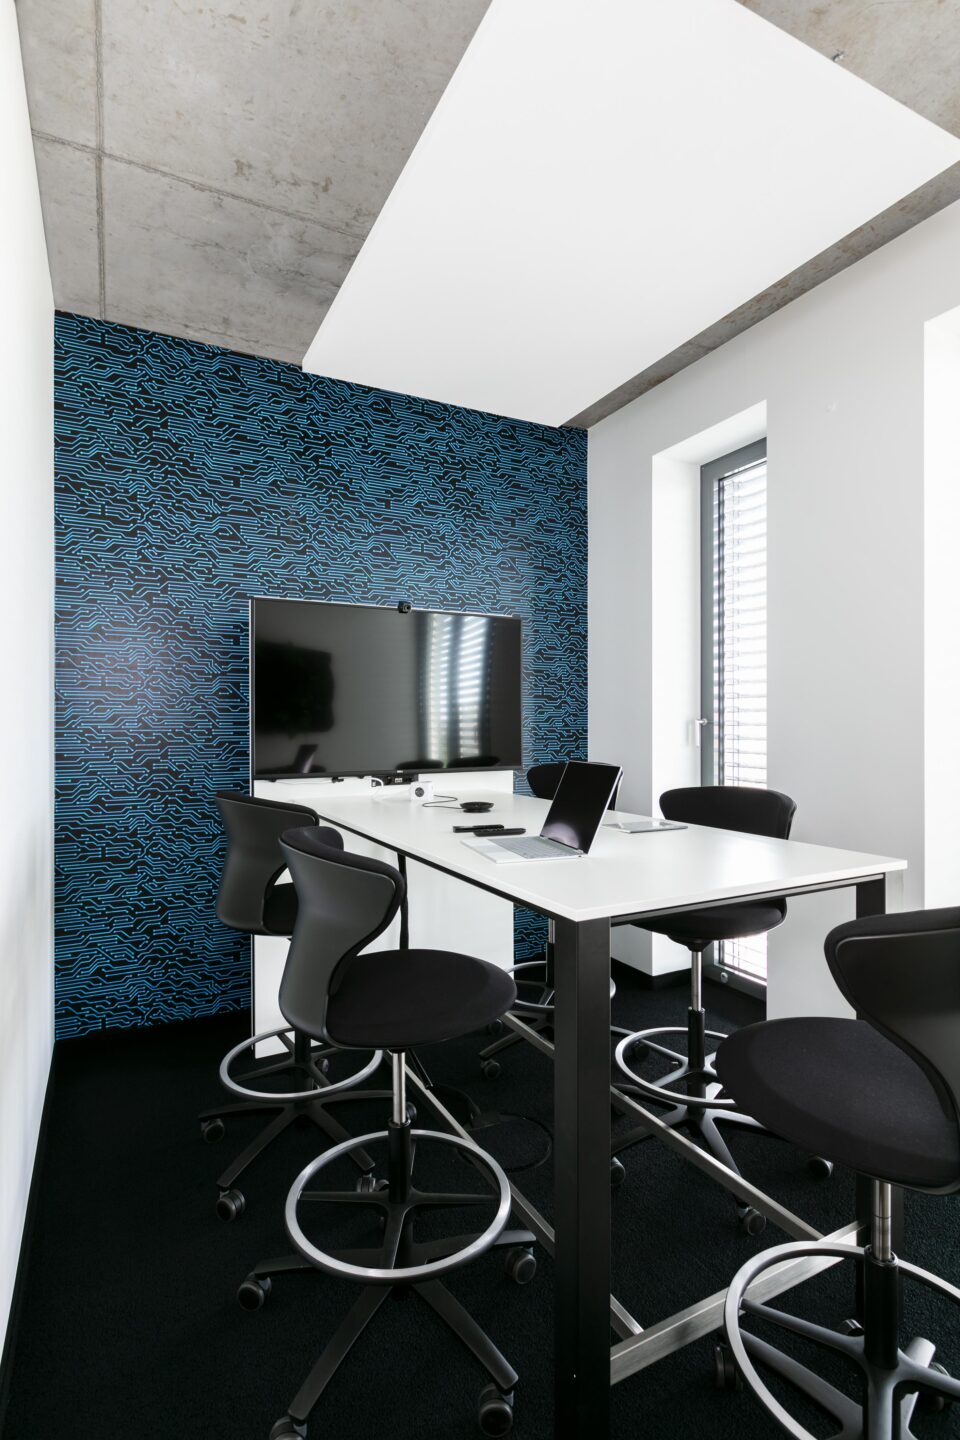 Inovex GmbH │ IT-Unternehmen │ high-desk von sedus │ moderne Besrechungsräume